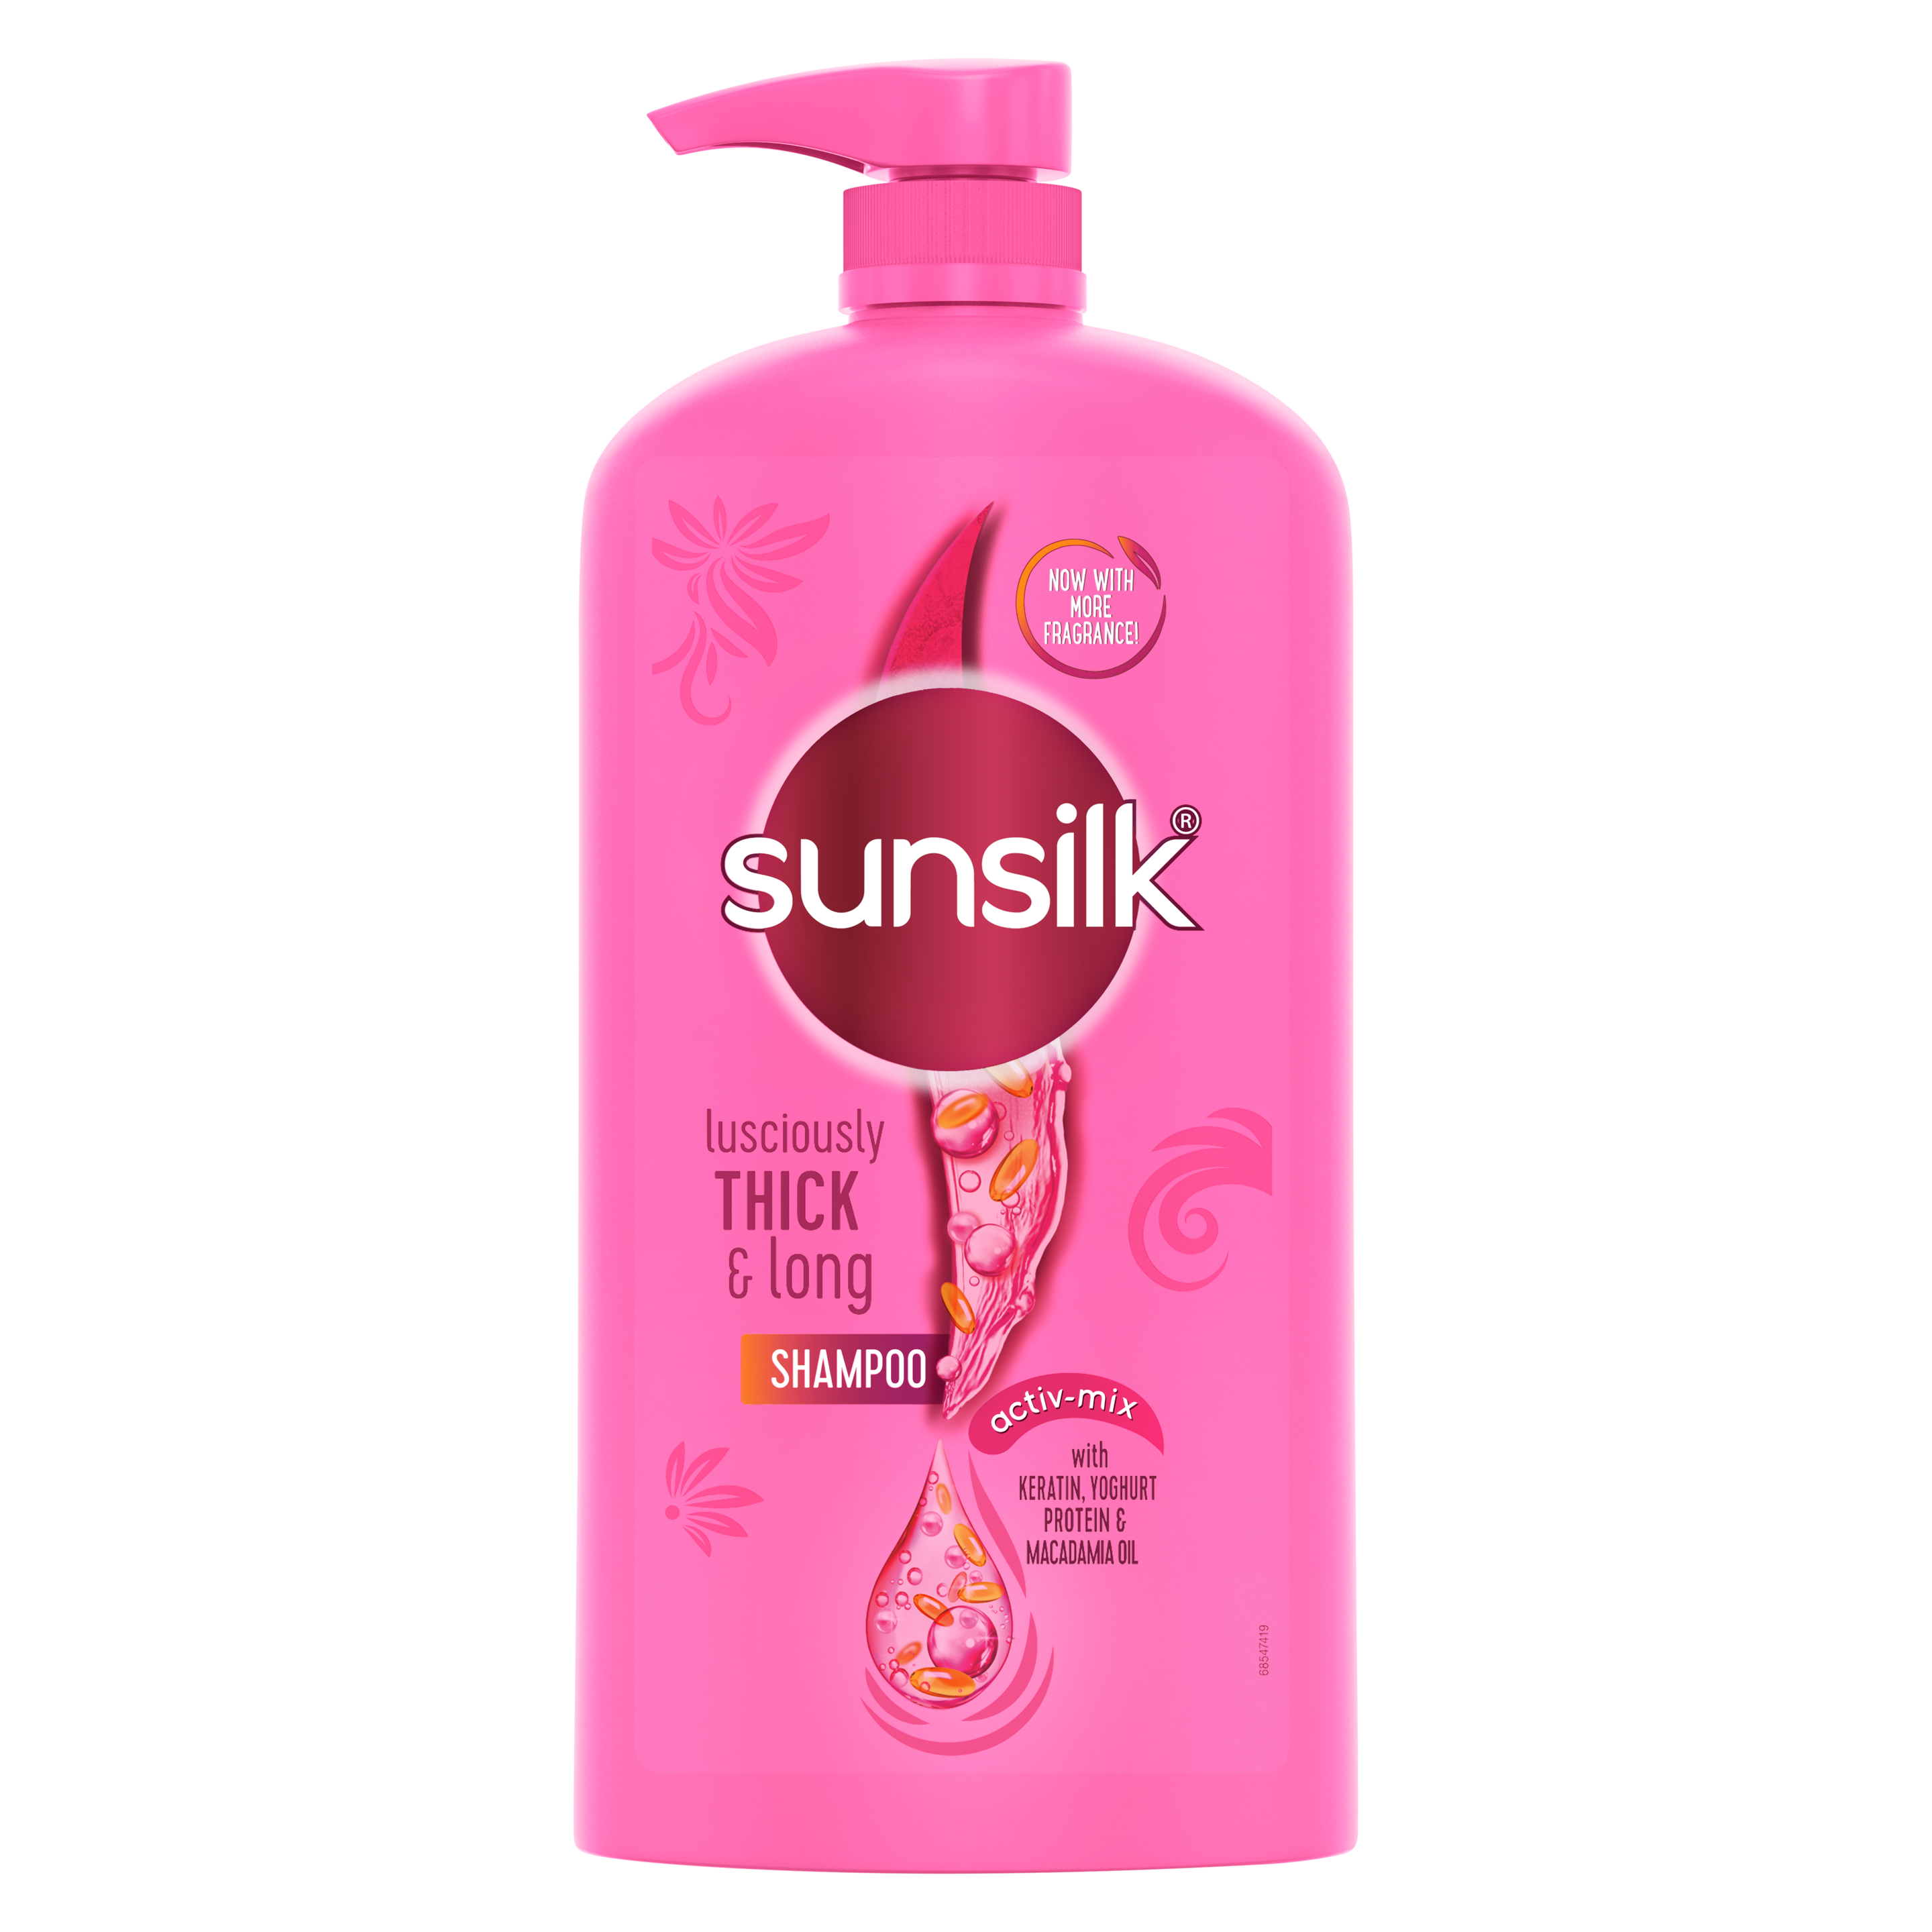 Sunsilk Lusciously Thick & Long Shampoo With Keratin